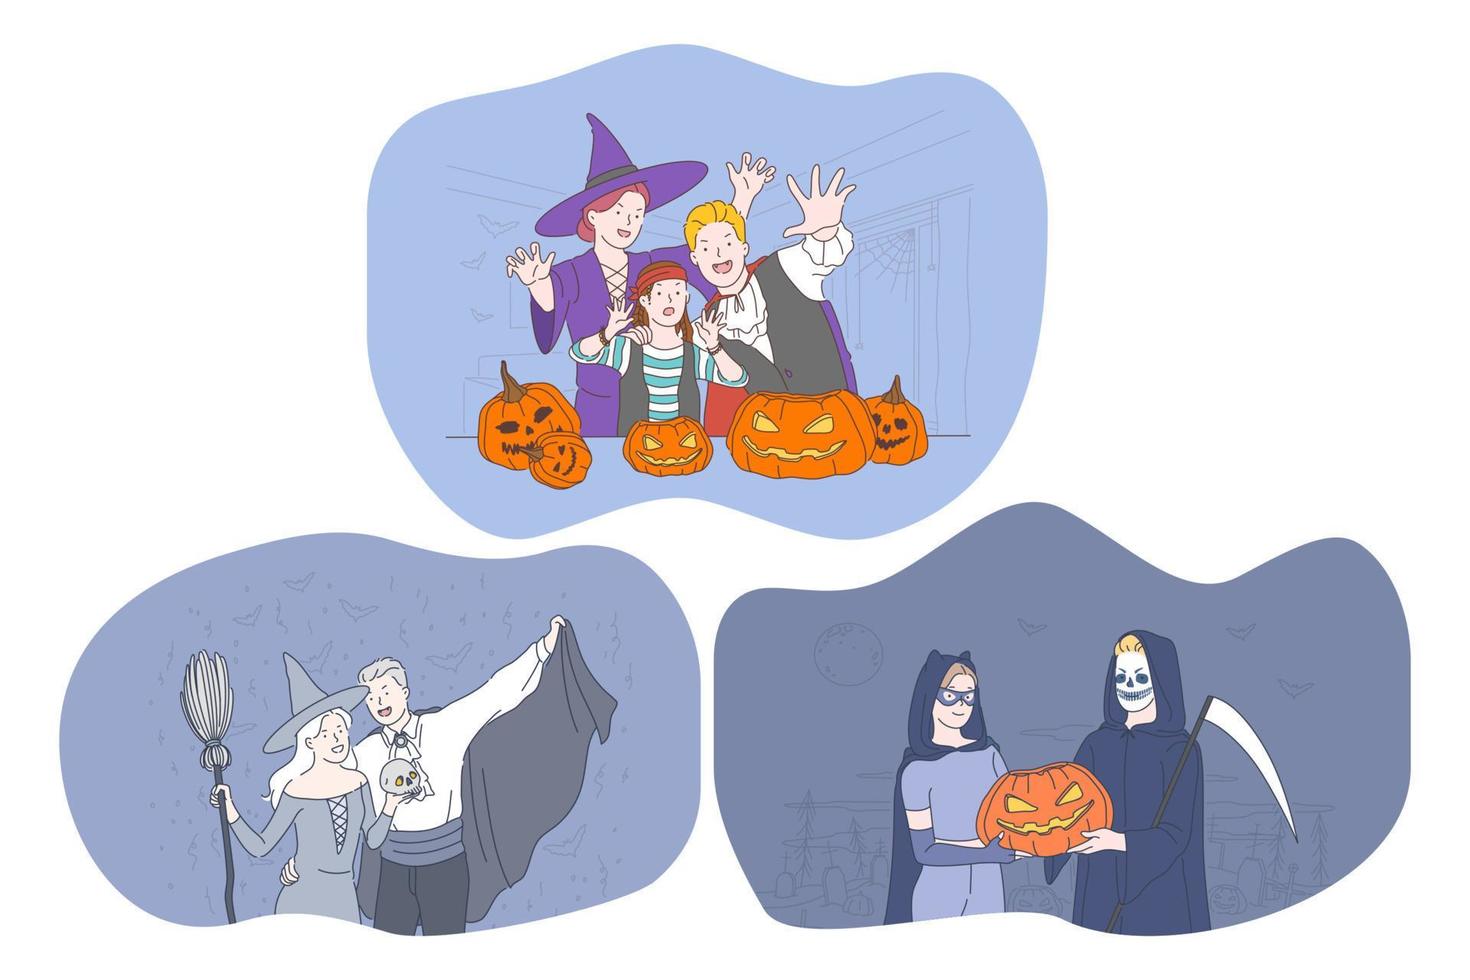 Feiern Sie Halloween-Feiertage in einem gruseligen Kostümkonzept. junge positive zeichentrickfiguren in hüten, vampir, hexe, monsterkostüme, die halloween mit traditionellen kürbissen in den händen feiern vektor